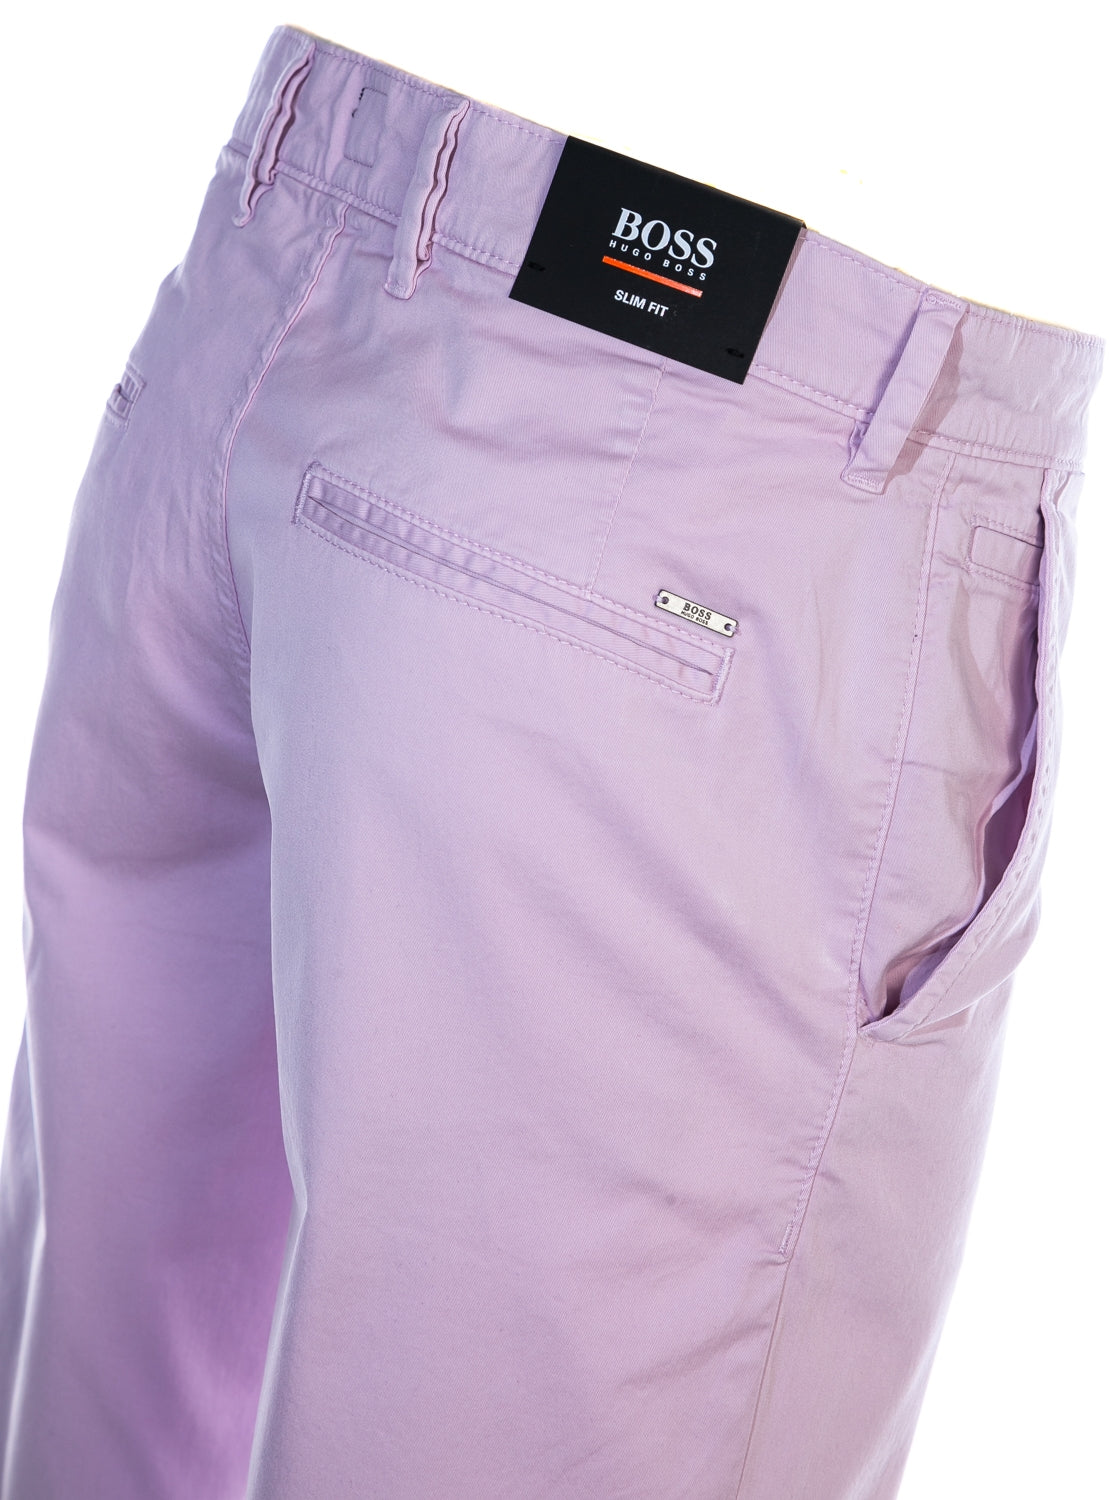 BOSS Schino-Slim Shorts Short in Pink